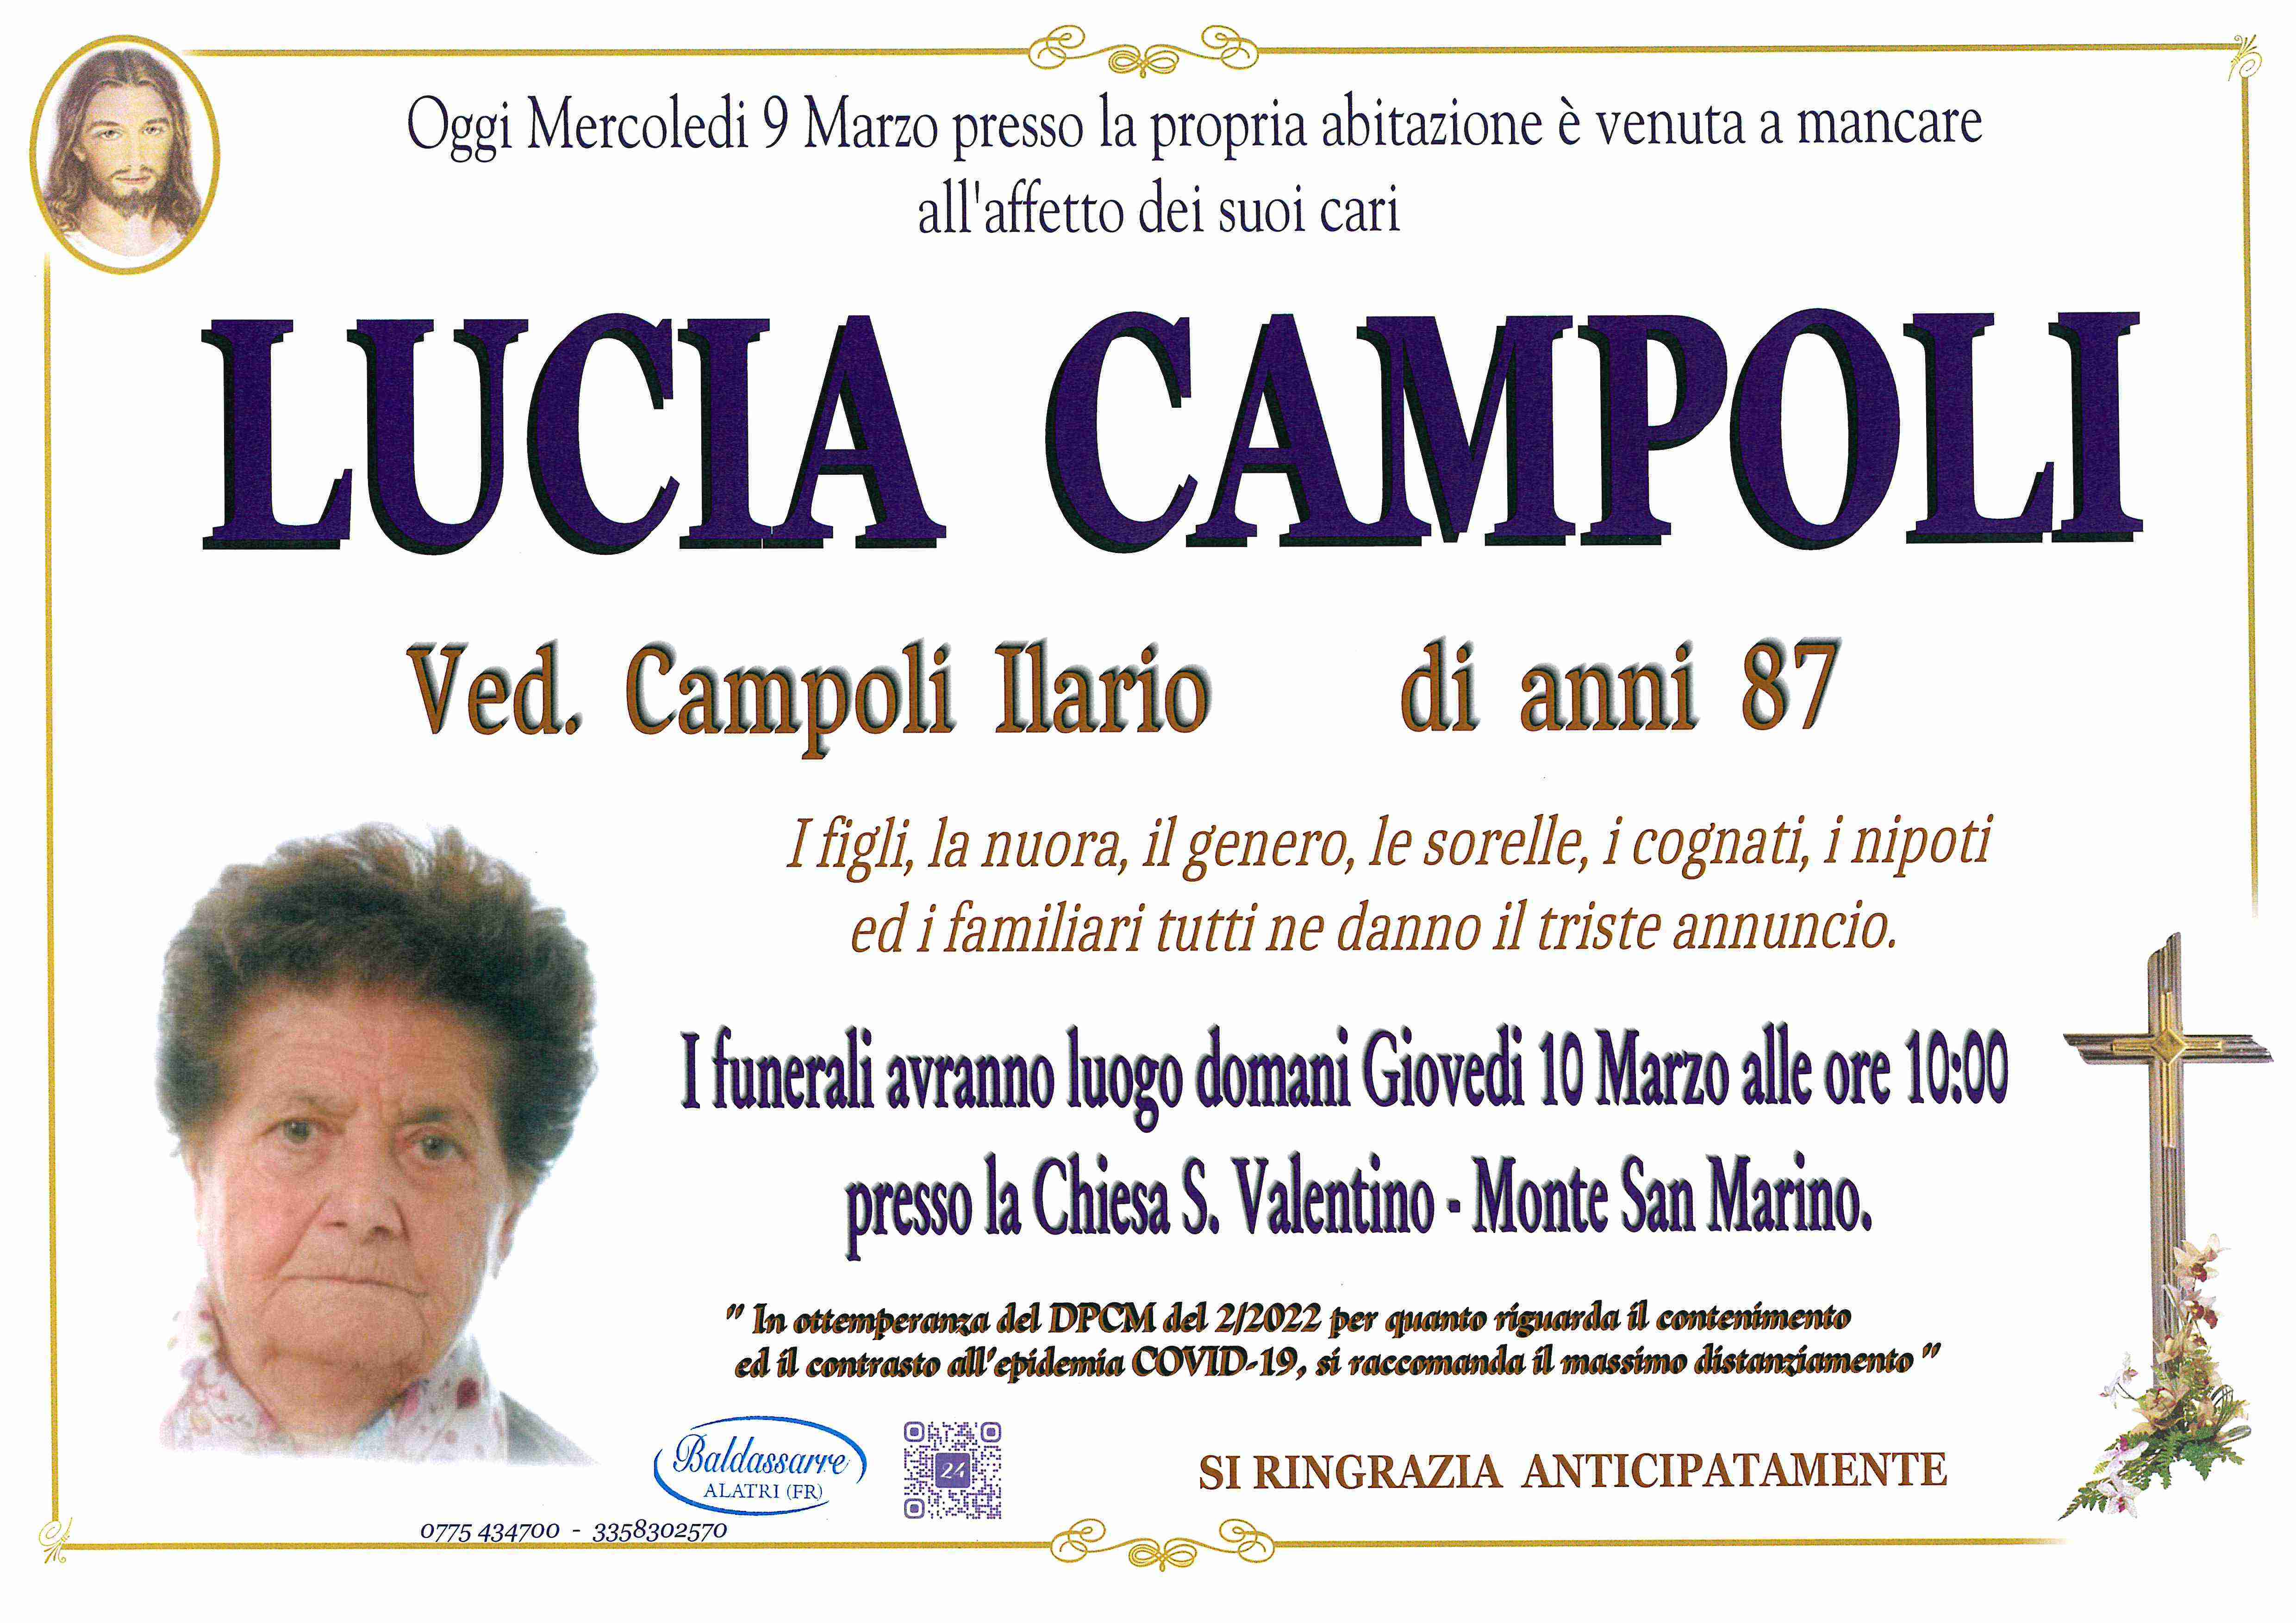 Lucia Campoli